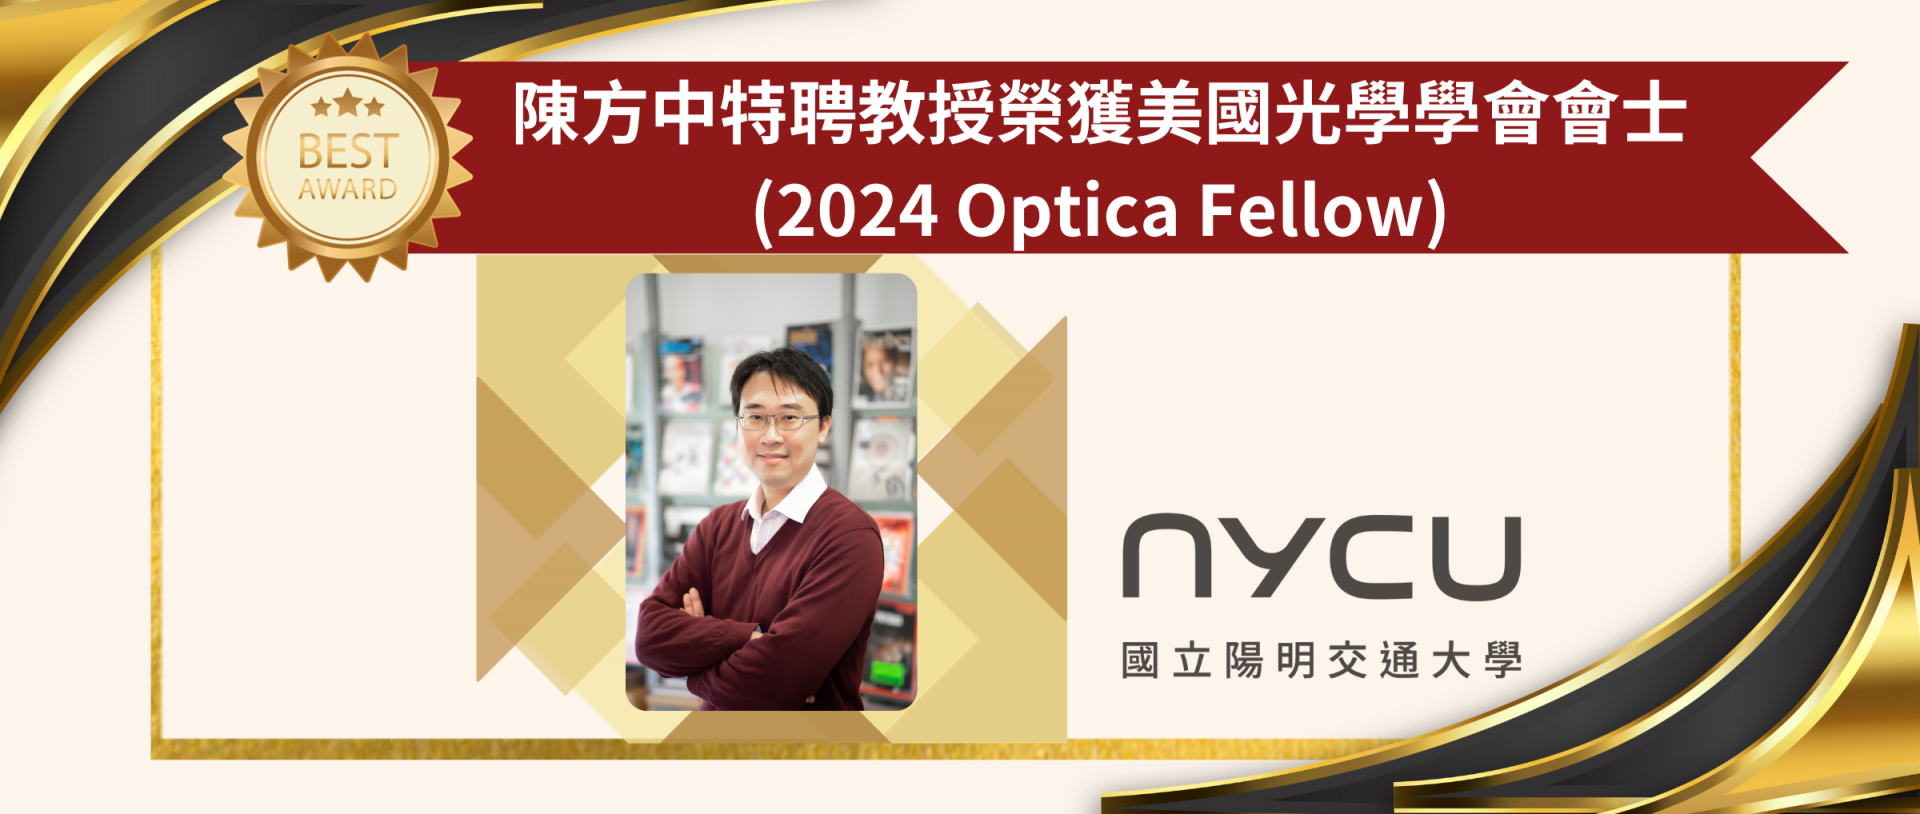 陳方中特聘教授榮獲美國光學學會會士(2024 Optica Fellow)